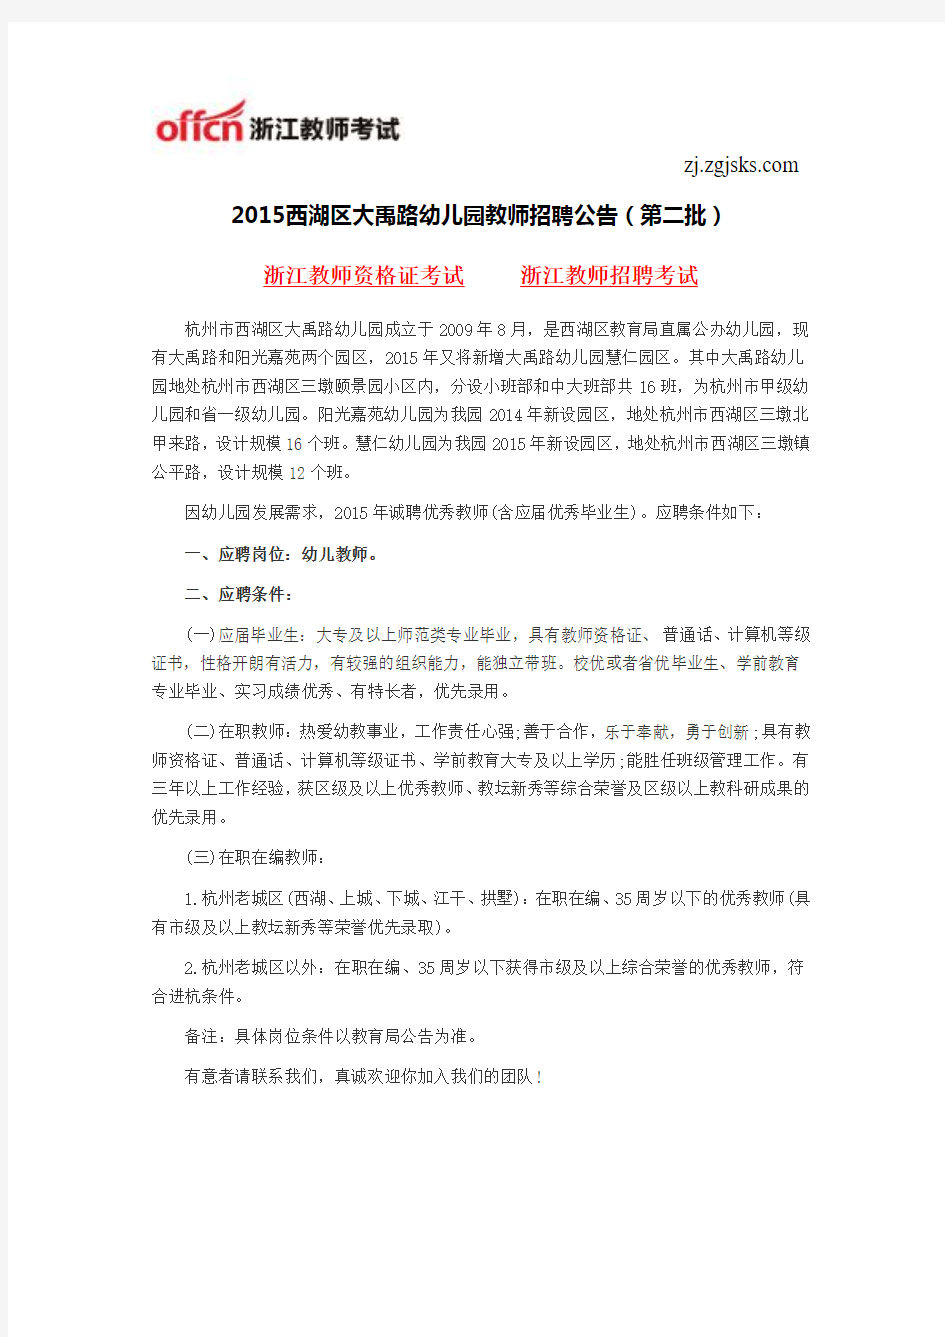 2015西湖区大禹路幼儿园教师招聘公告(第二批)